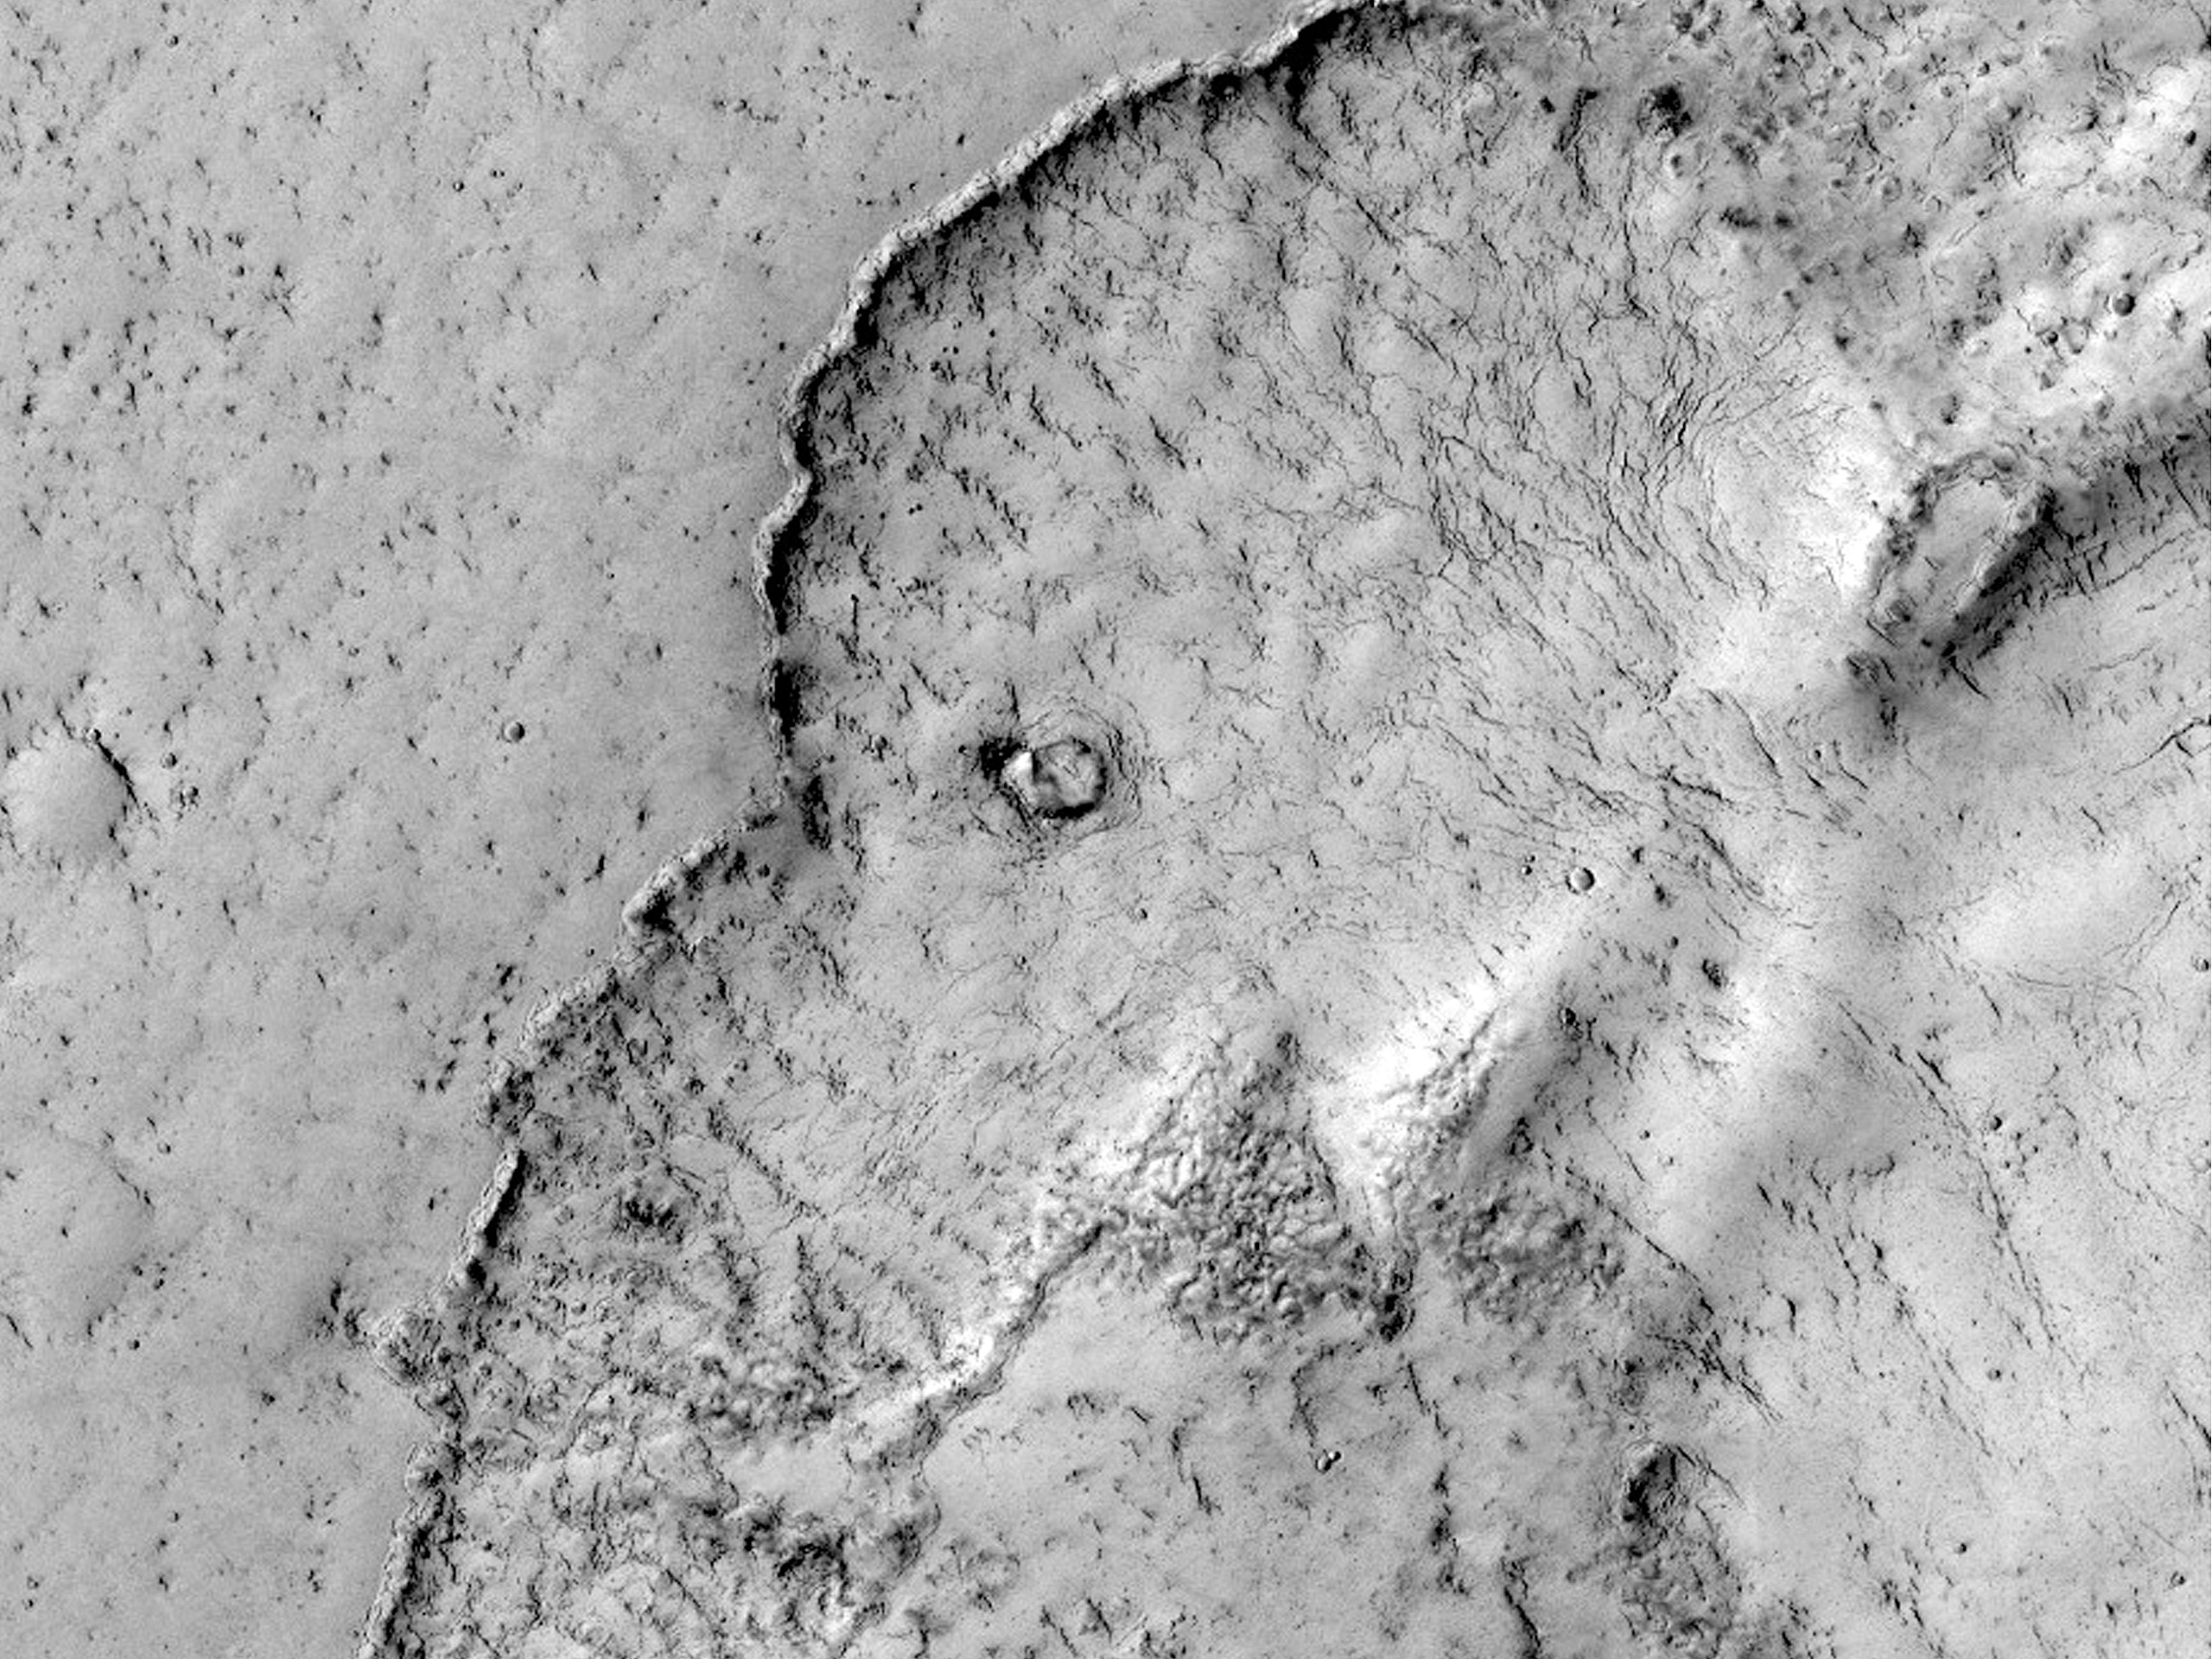 Un lphant sur Mars ?